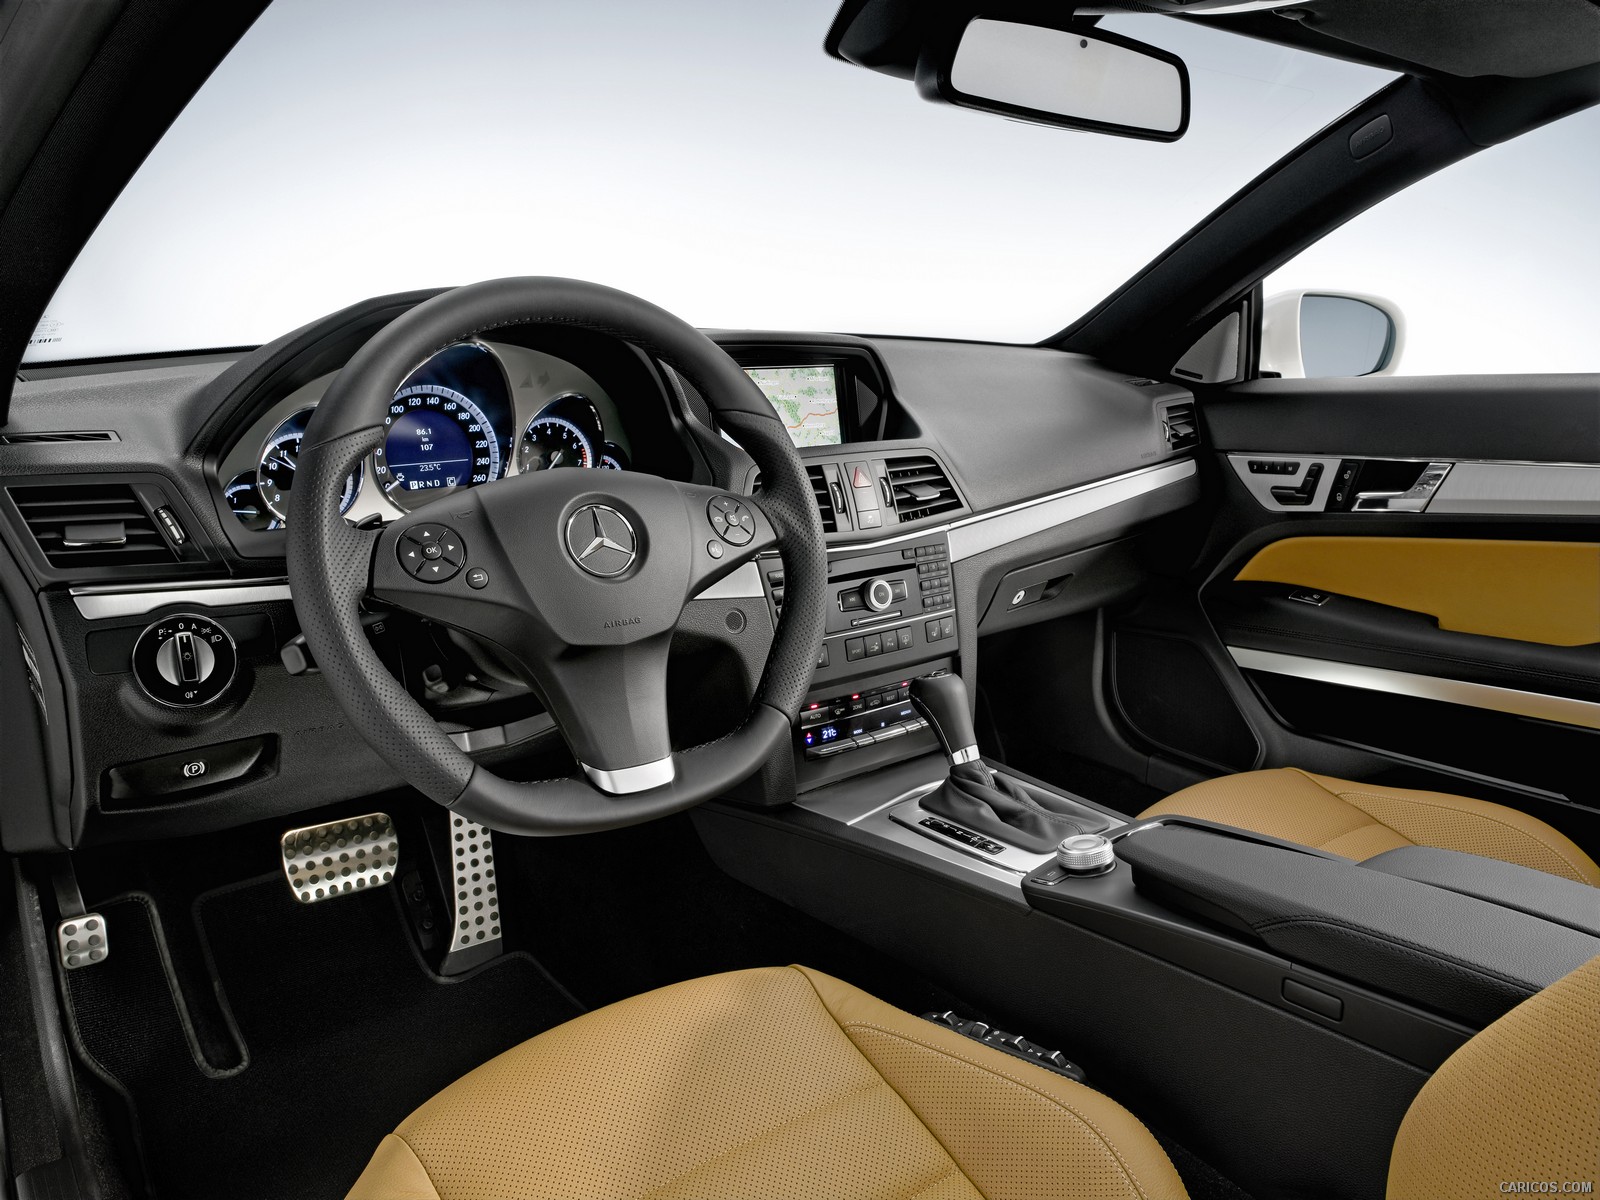 2010 Mercedes Benz E Class Coupe Interior Dashboard View